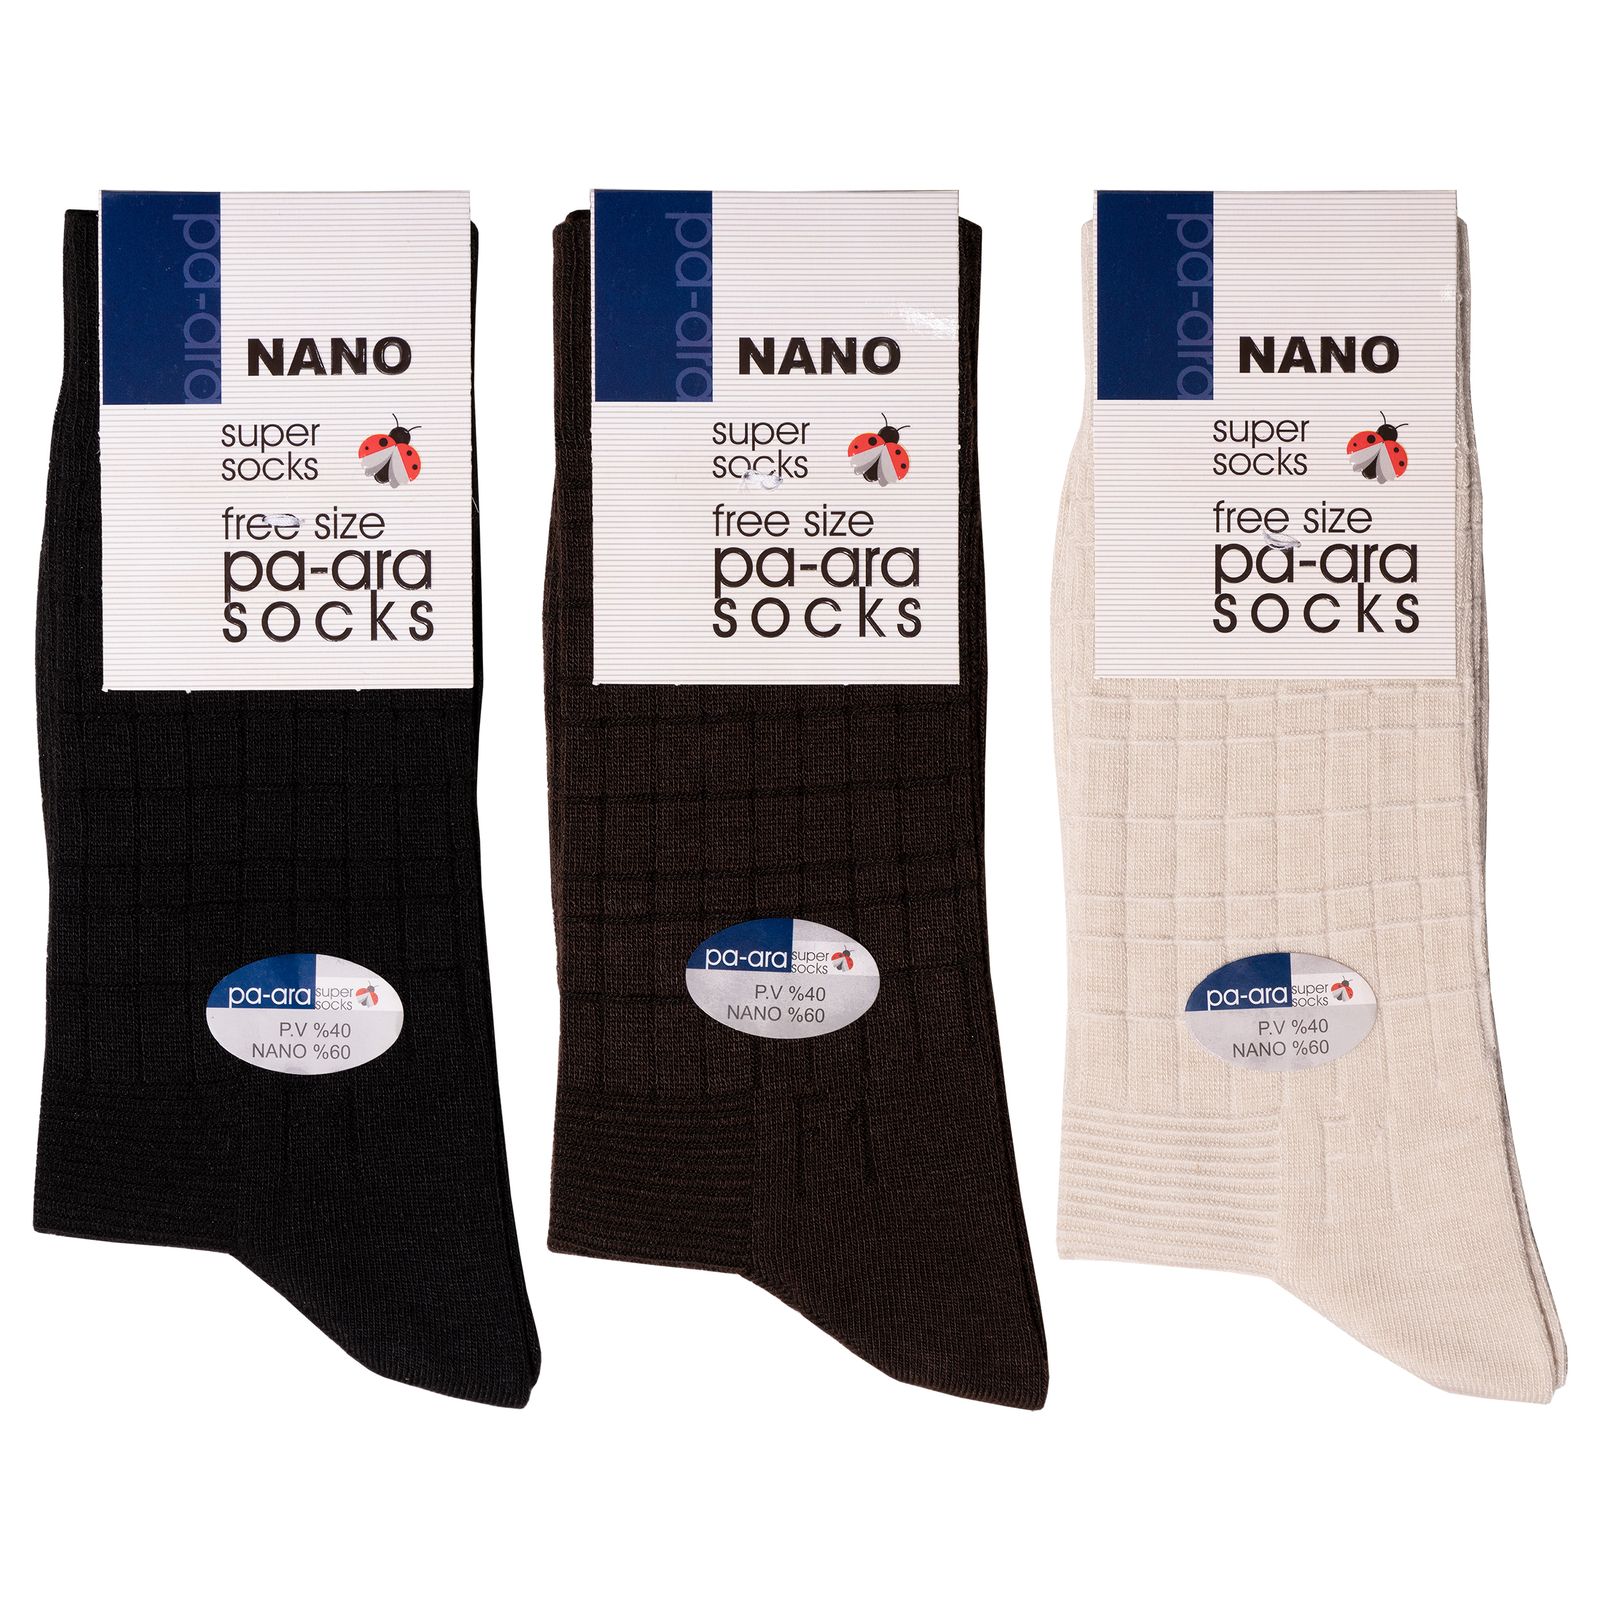 جوراب مردانه پاآرا مدل نانو 60 کد 6010 مجموعه 3 عددی -  - 2